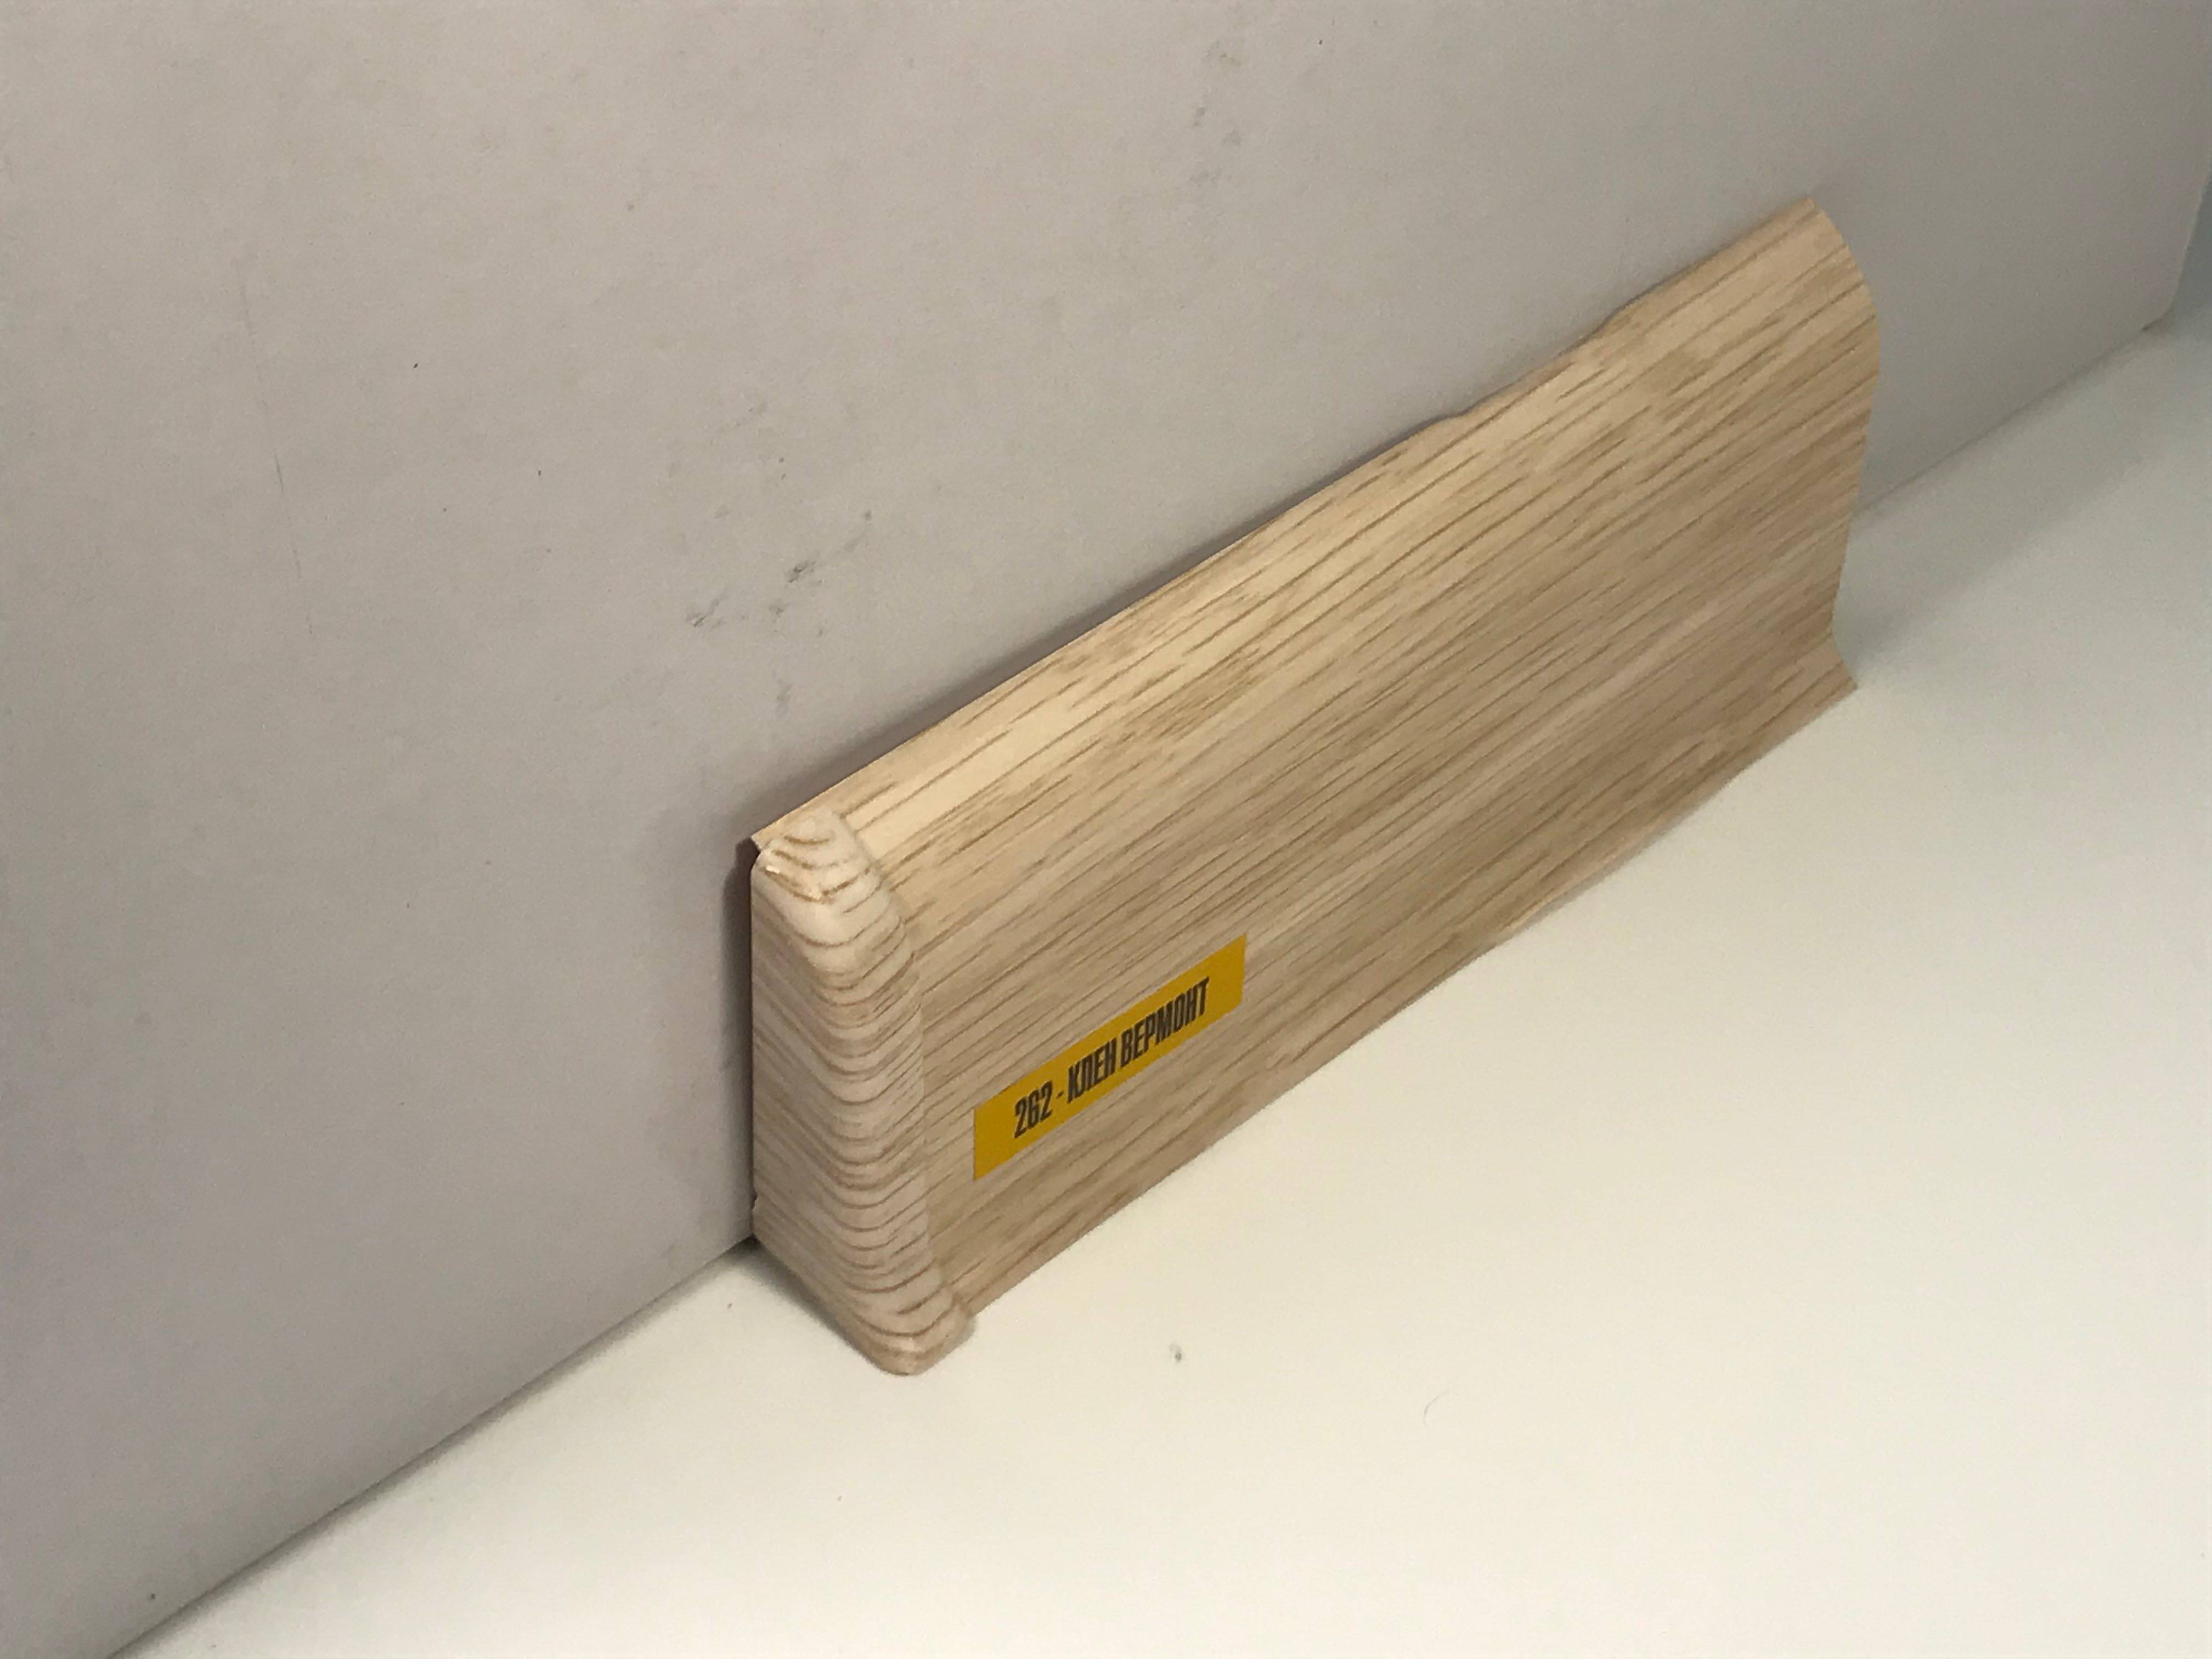 Как крепить плинтус к полу и стене: пластиковый, деревянный, мдф